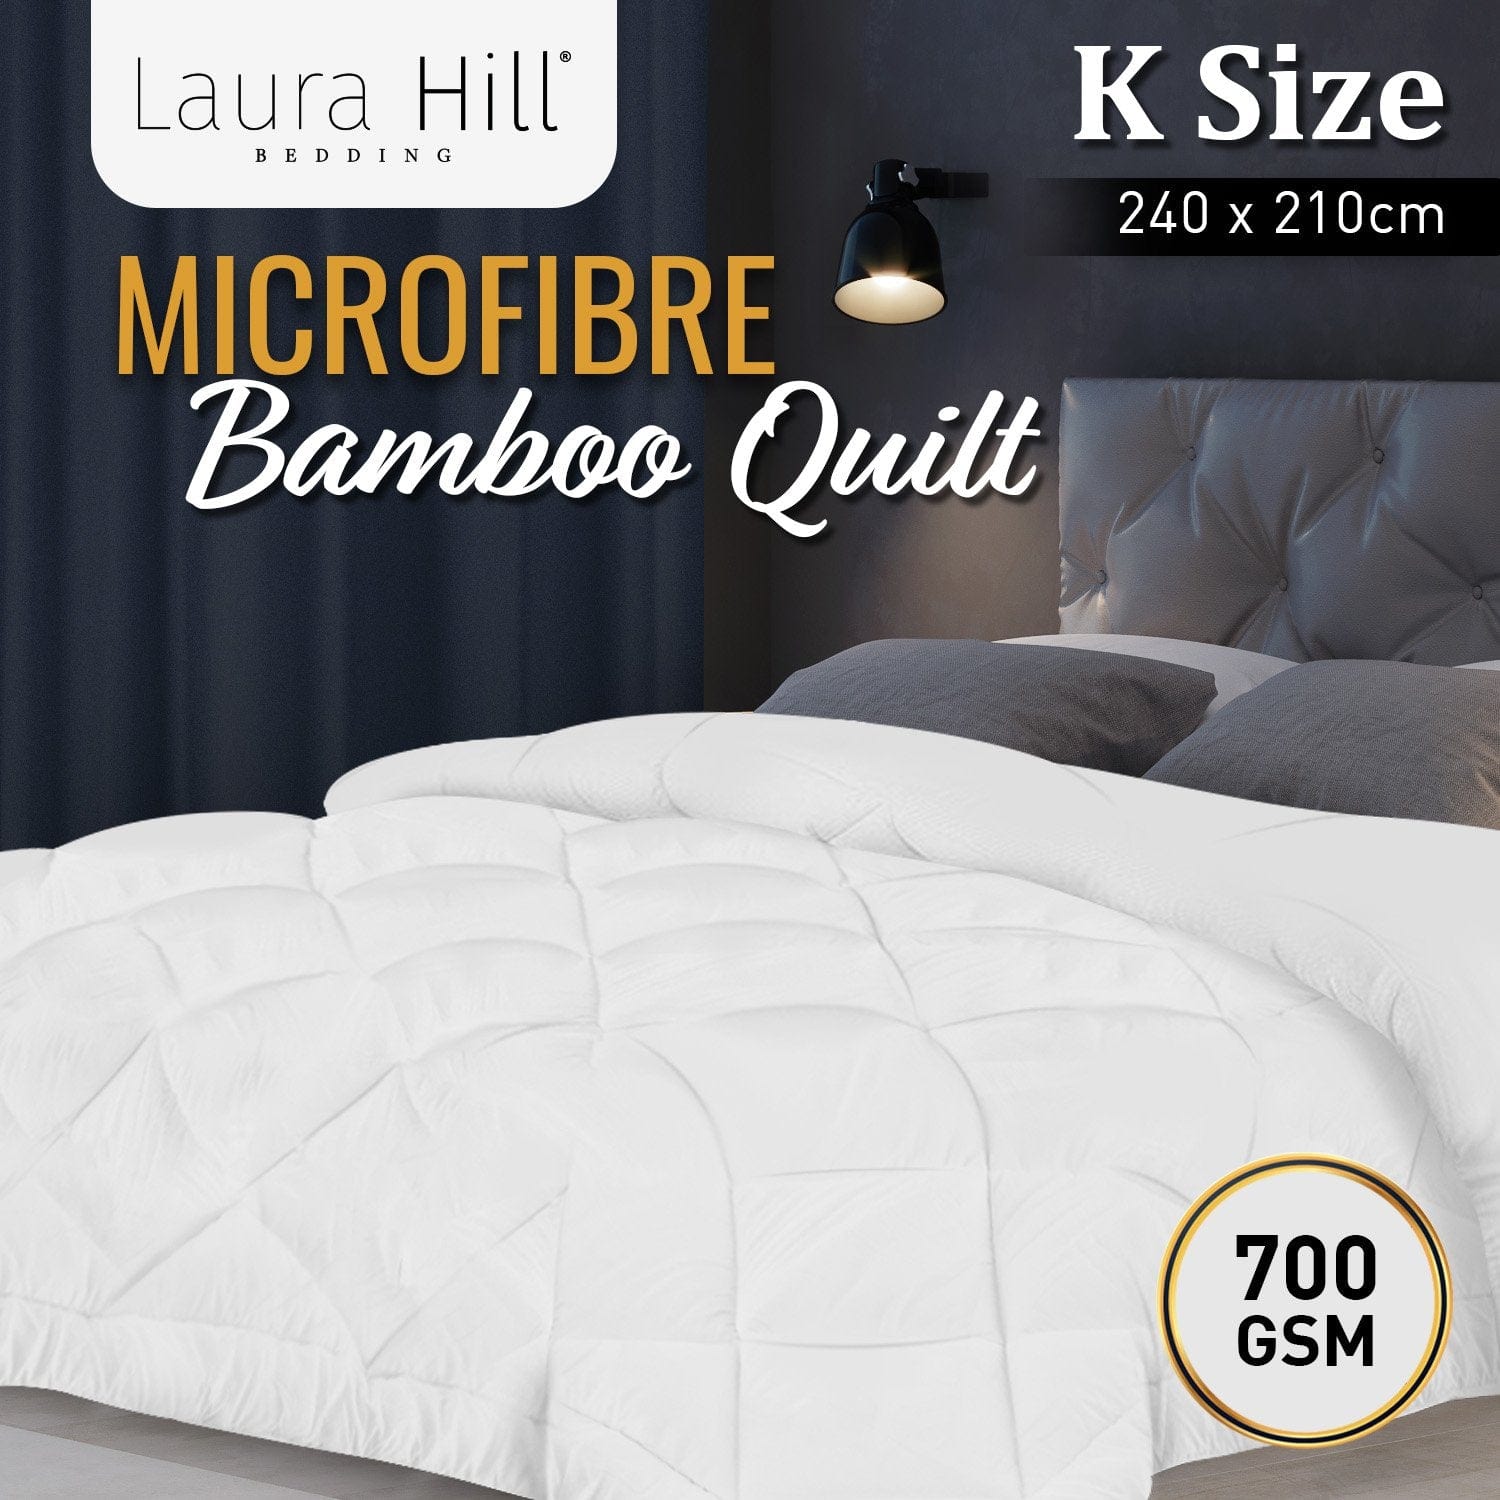 700GSM Microfibre Bamboo Quilt Comforter Doona - King